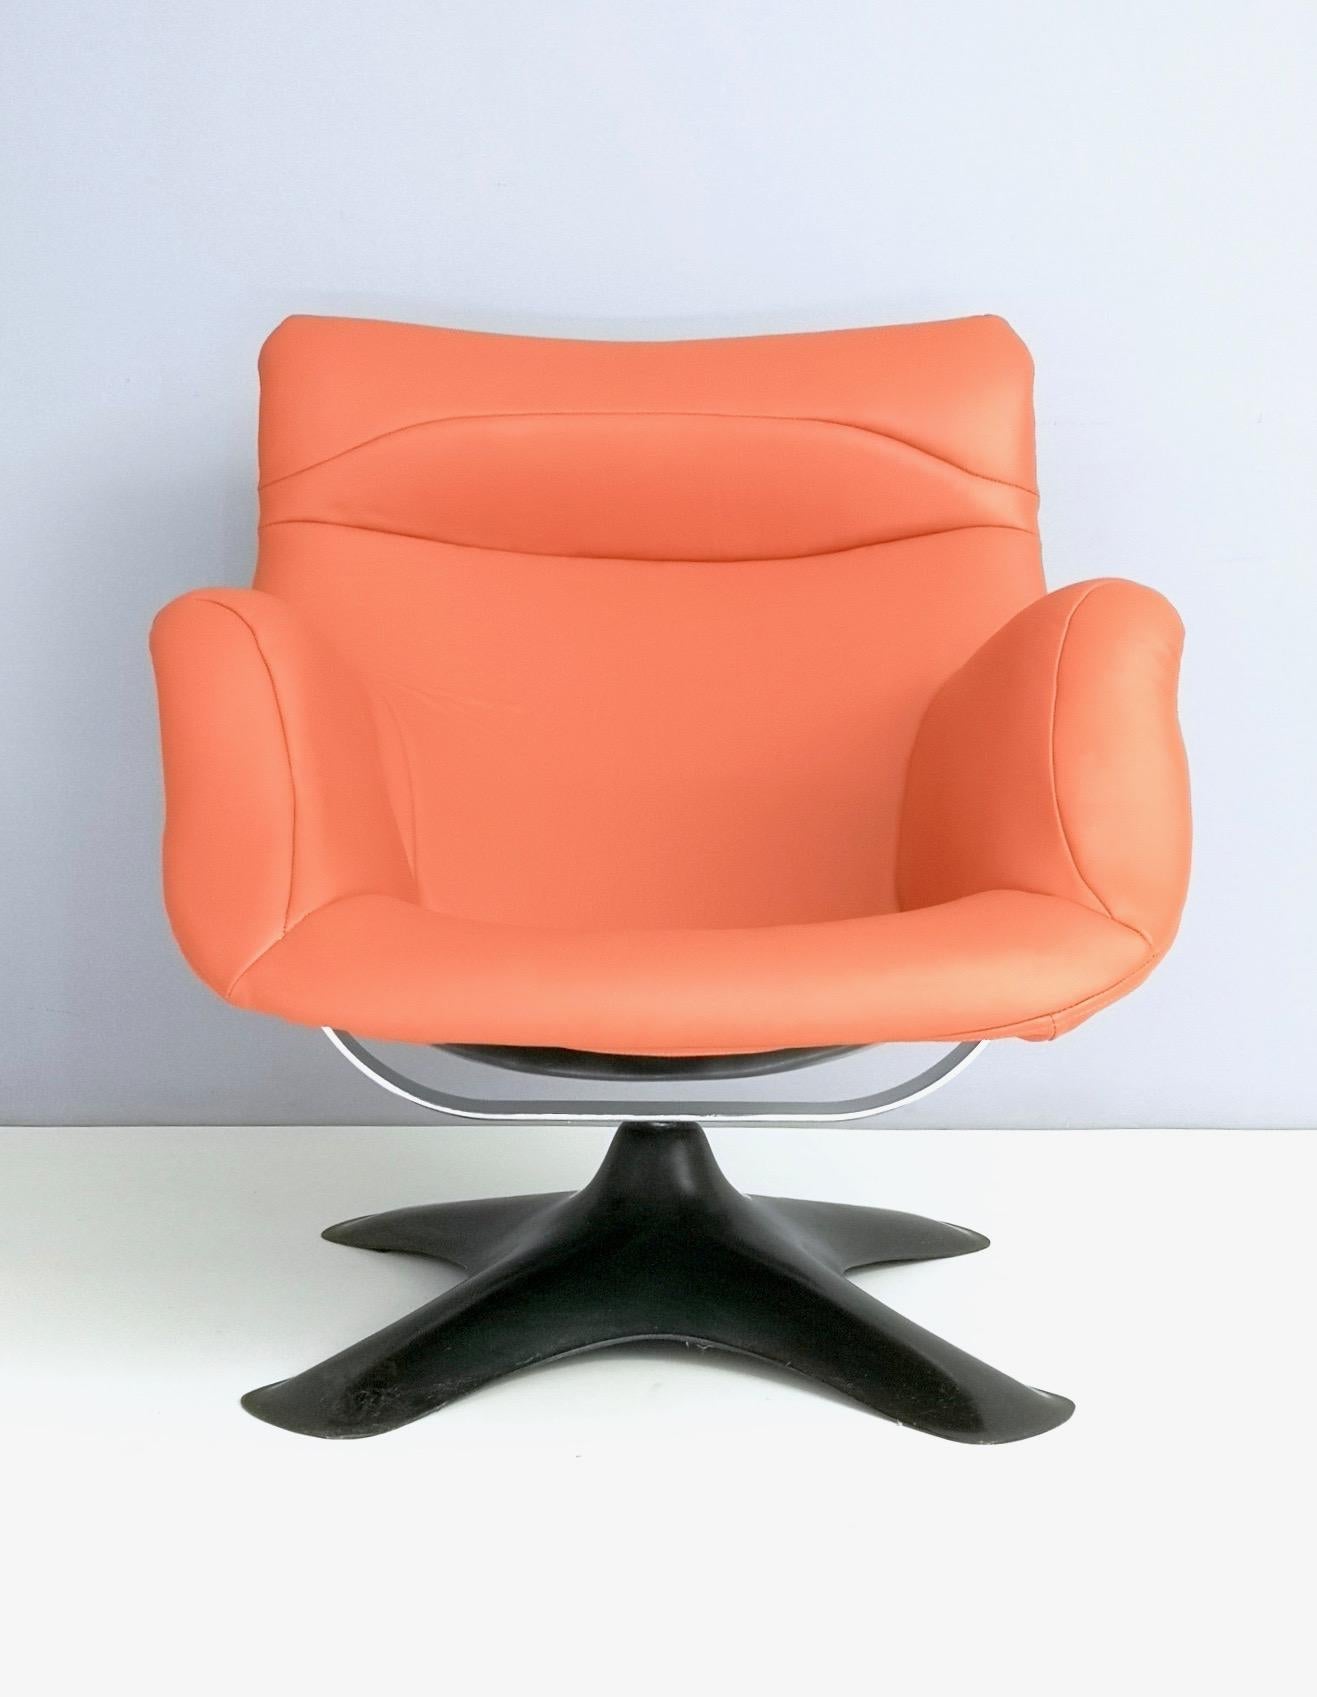 Finlande, années 1960.
Chaise longue ergonomique et enveloppante par Yrjo Kukkapuro.
Il est doté d'une barre chromée qui sert de suspension à la chaise, et comporte une coque et une base en fibre de verre. Cette chaise longue tourne à 360 degrés